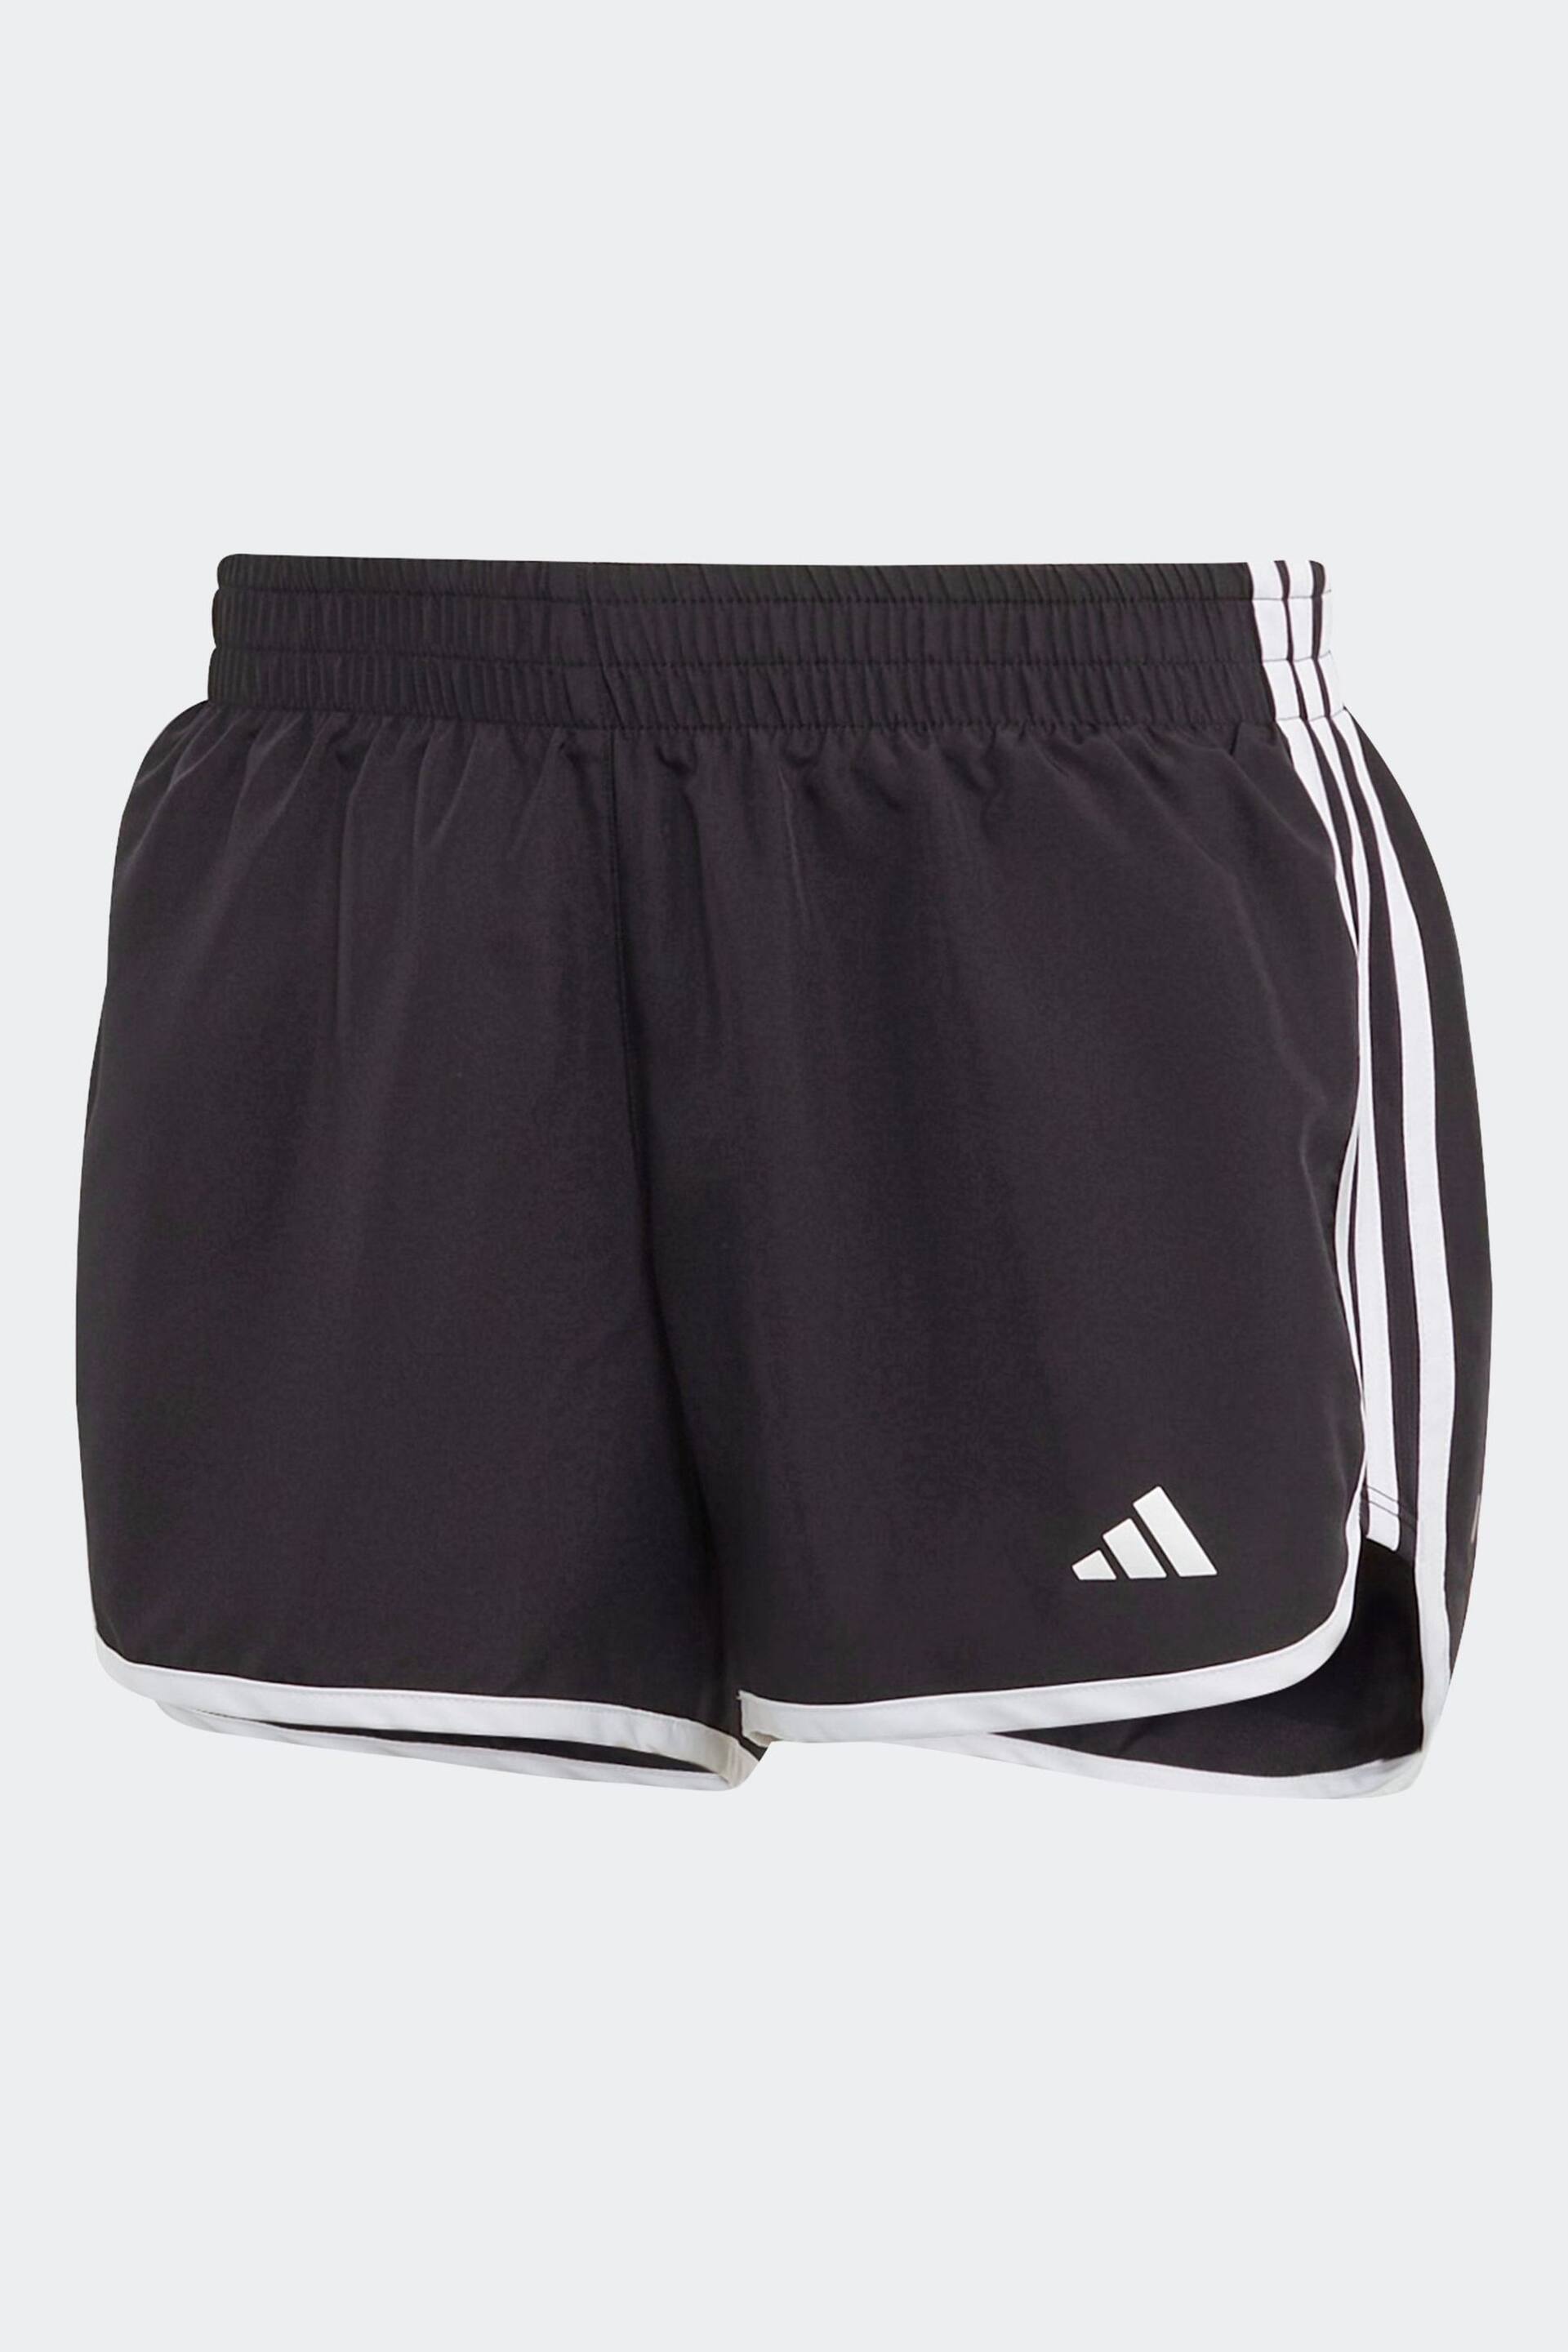 adidas Black M20 Shorts - Image 7 of 7